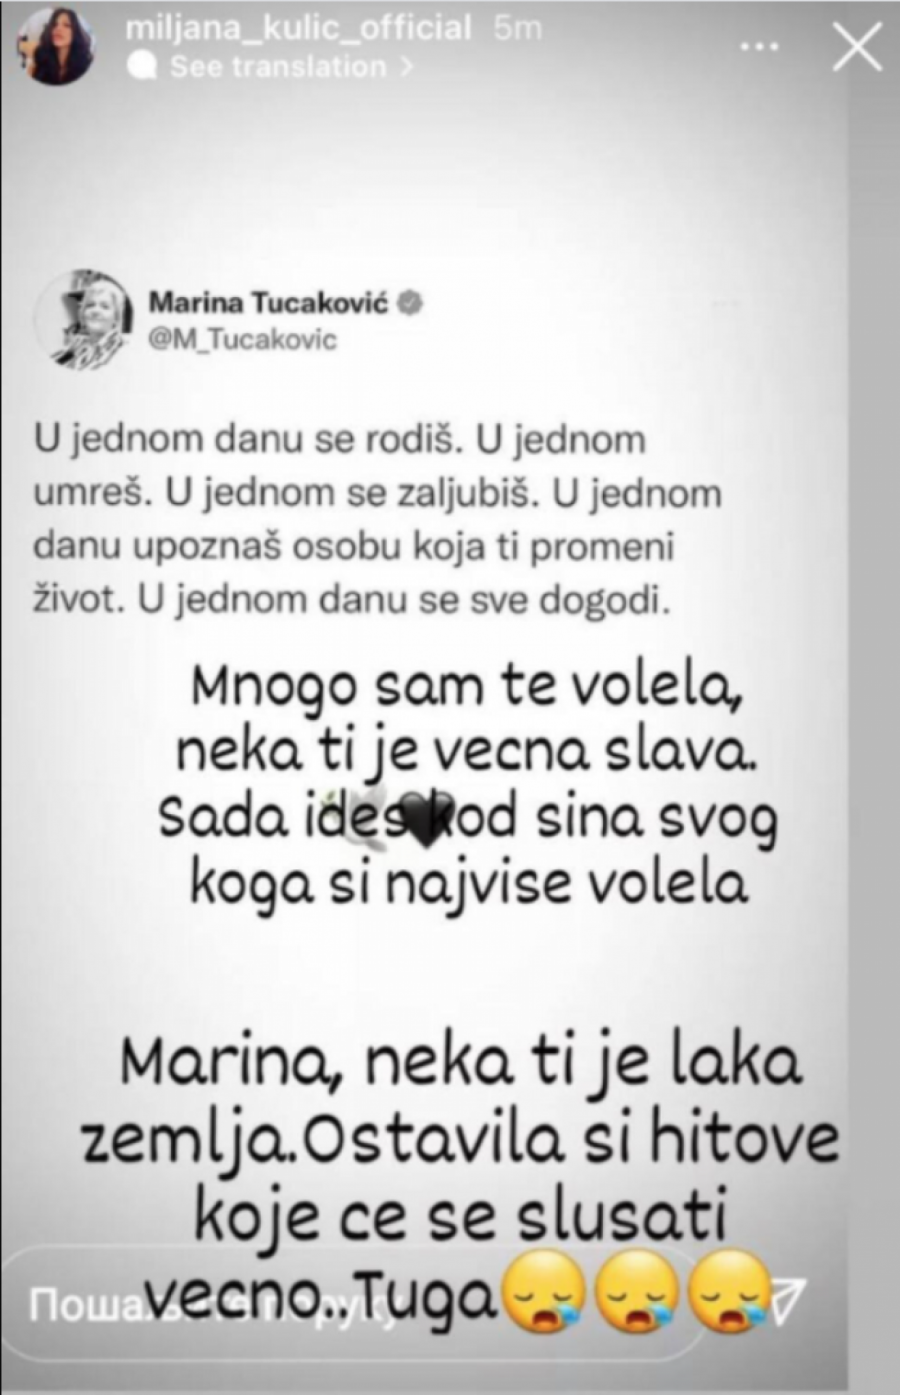 MNOGO SAM TE VOLELA, SAD IDEŠ KOD SINA Miljana Kulić u suzama zbog smrti Marine Tucaković, oprostila se od nje emotivnim rečima!